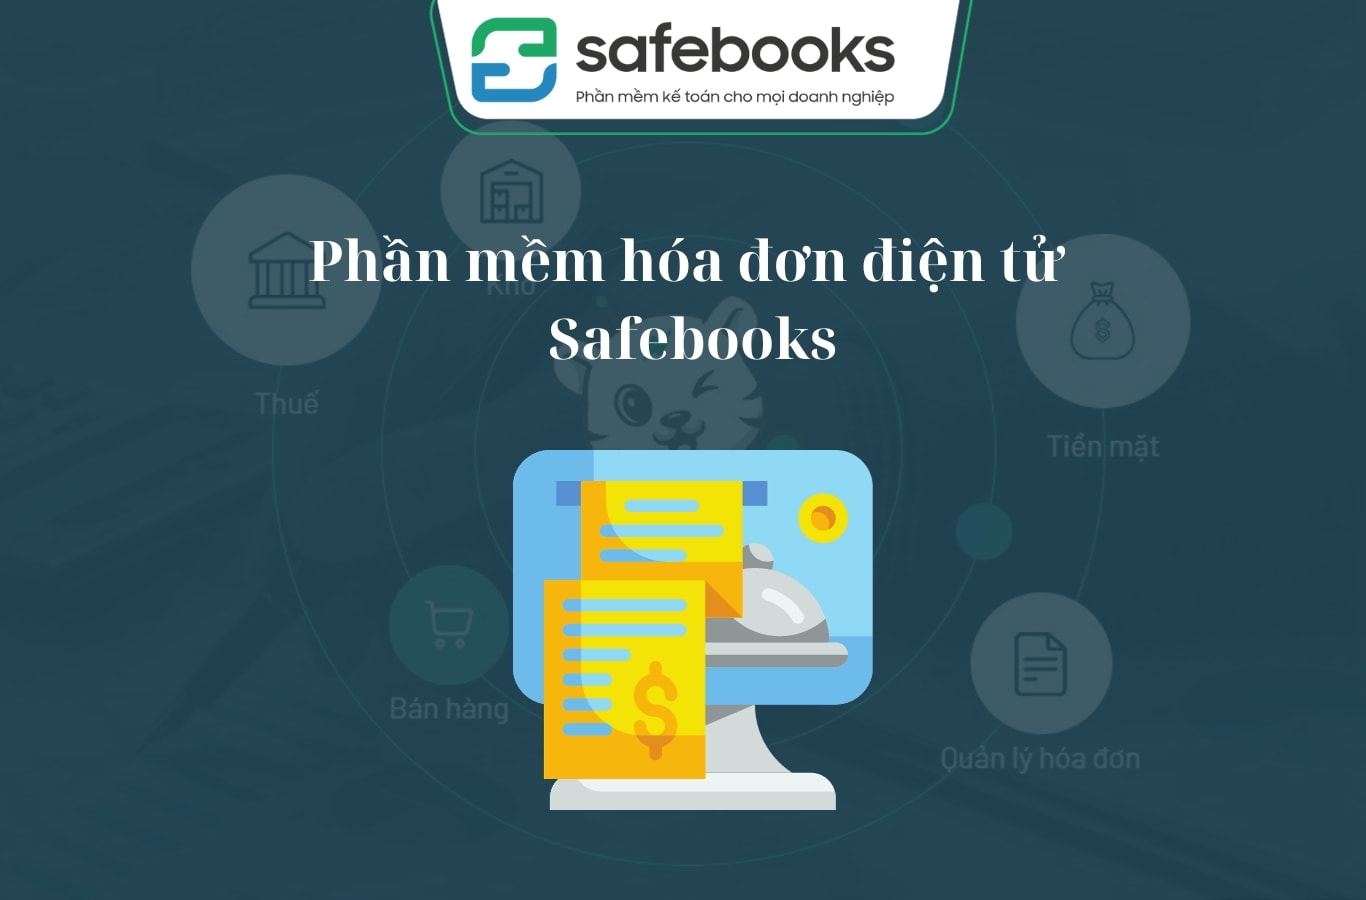 Phần mềm hóa đơn điện tử Safebooks